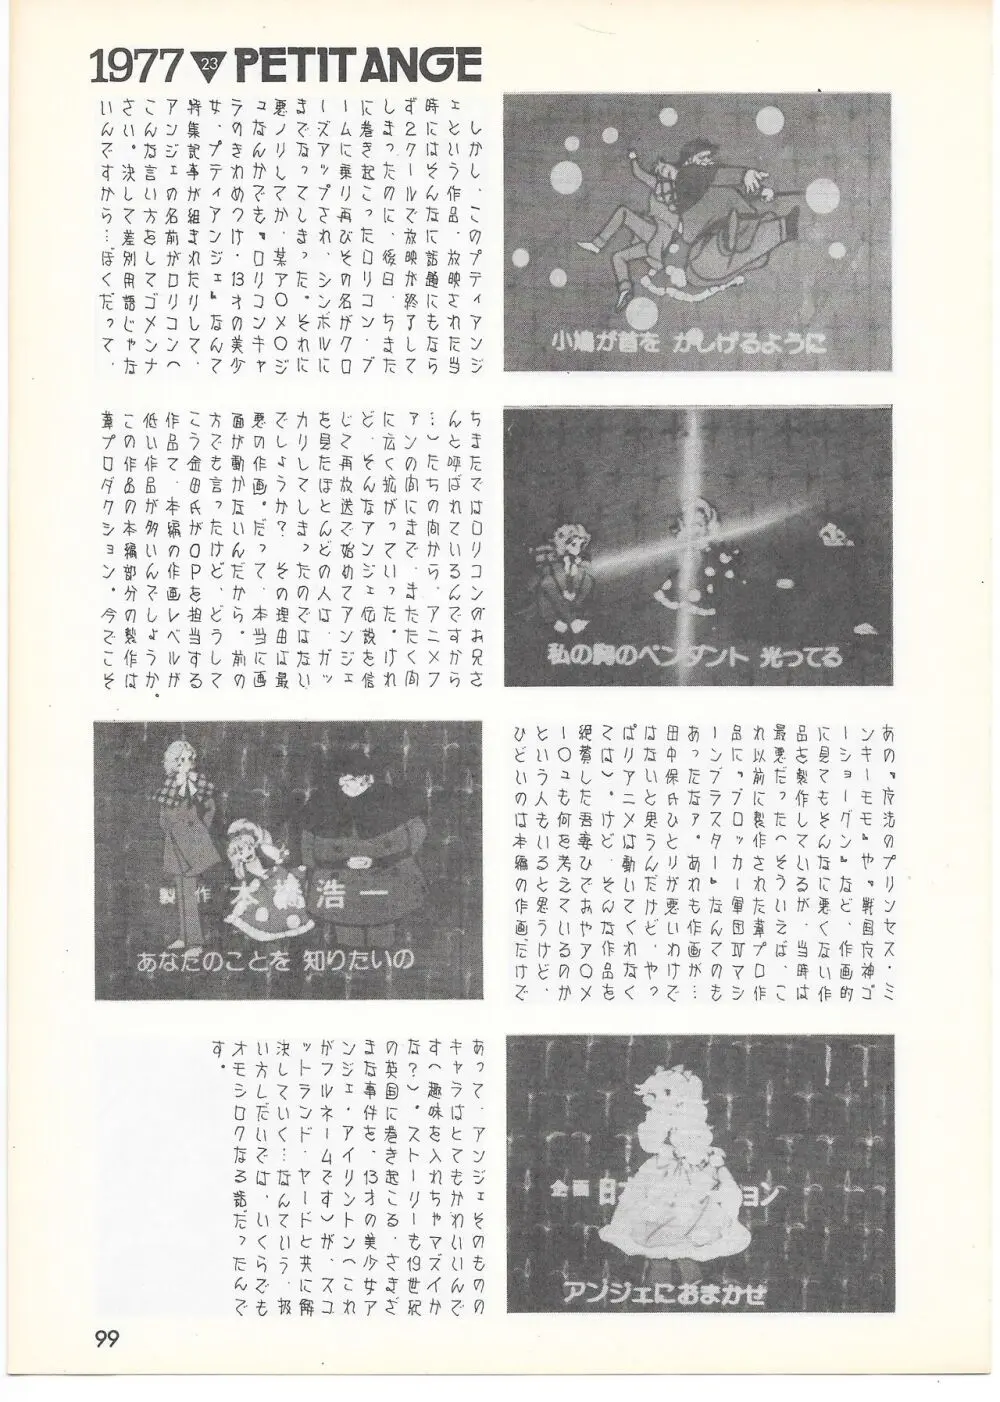 THE ANIMATOR 1 金田伊功特集号 94ページ